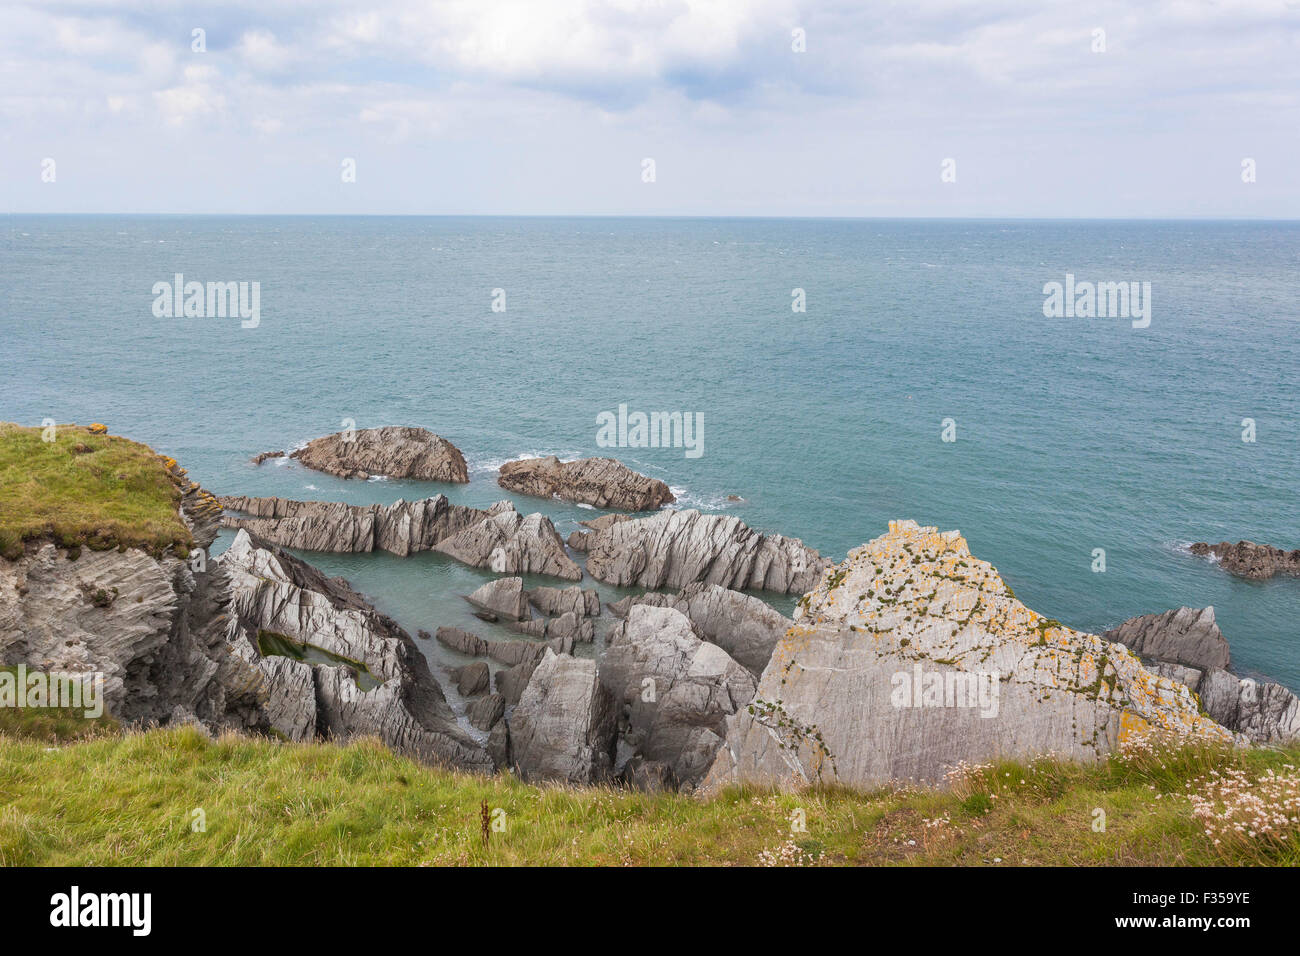 Coastal erosion, Bull Point, Devon, West Country, England, UK Stock Photo